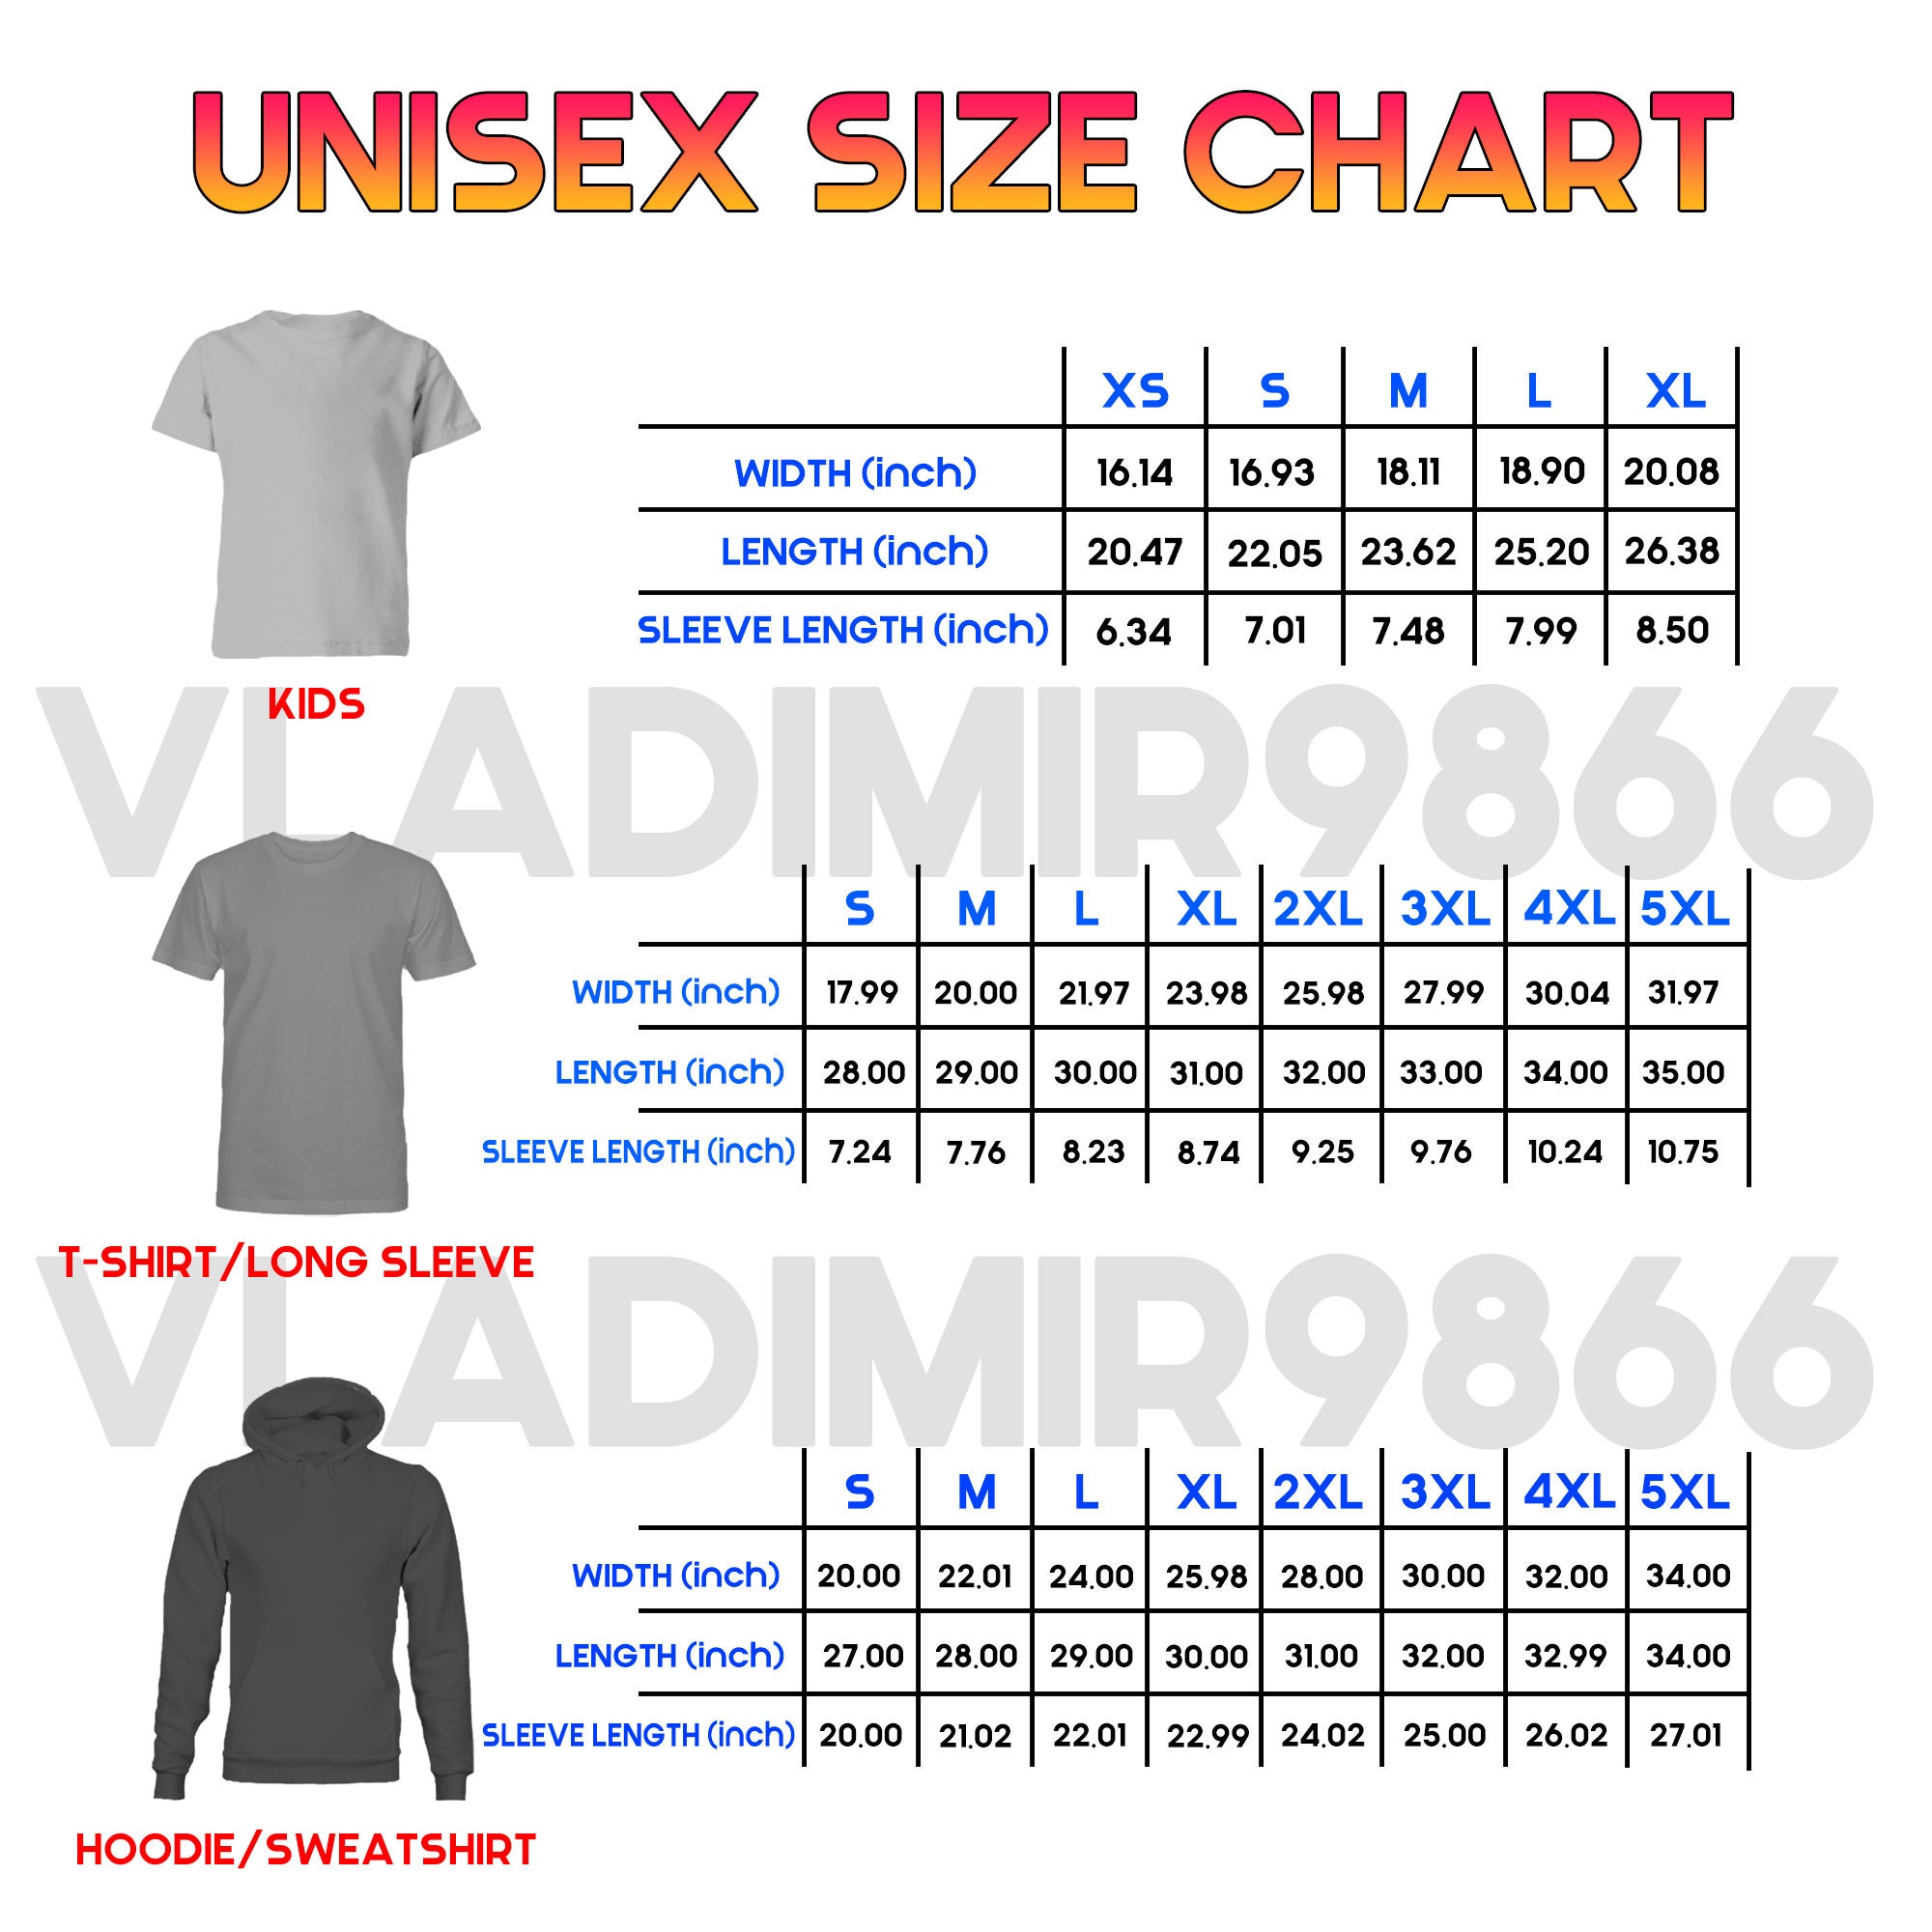 Men'S Bbb - Big Baller Marke Official Short Sleeve T-Shirts Full